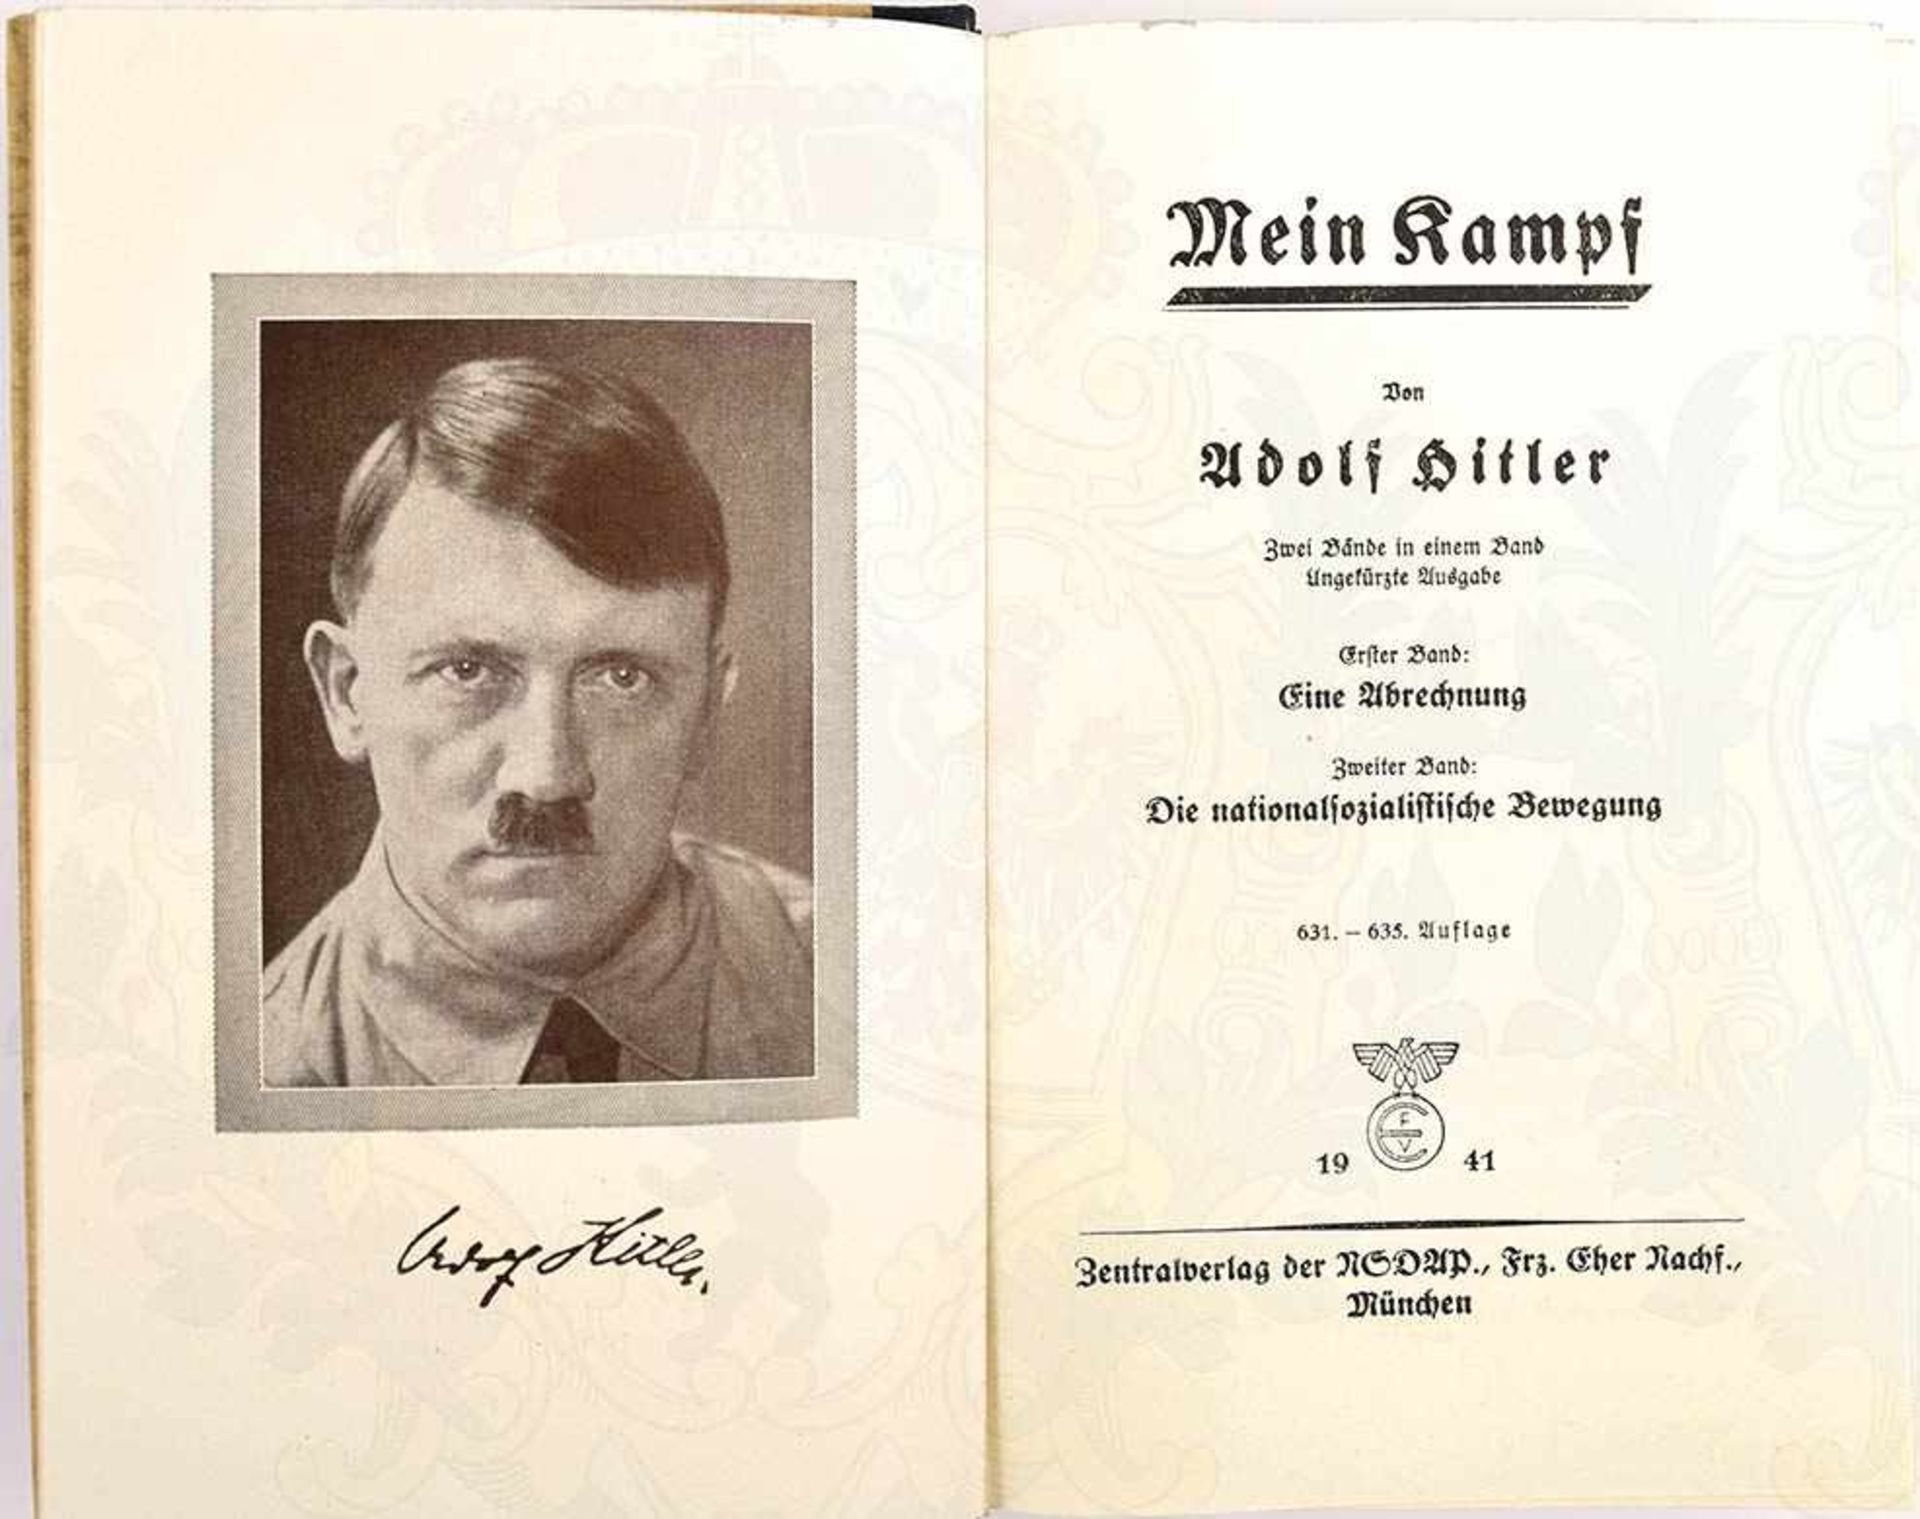 MEIN KAMPF, von Adolf Hitler, Hochzeitsausgabe, 631. Tsd., Zentralverlag der NSDAP, München 1941, - Bild 3 aus 3